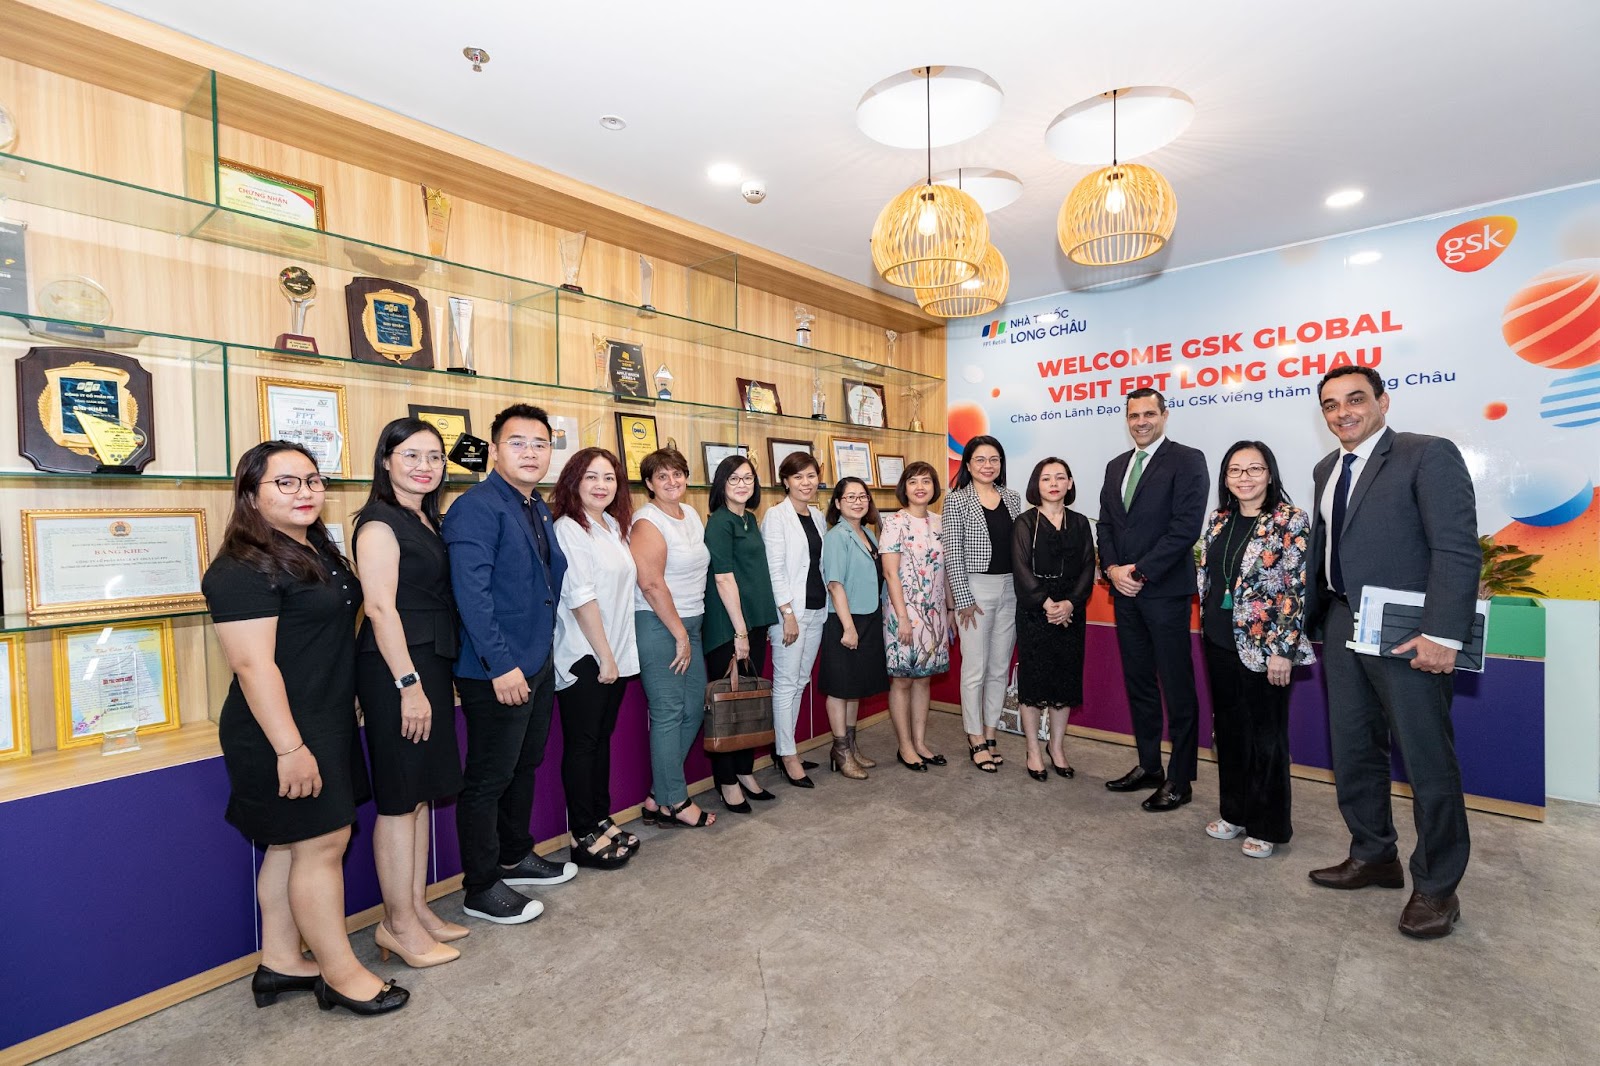 Phó Chủ tịch hãng dược hàng đầu thế giới GSK thăm và làm việc chính thức cùng FPT Long Châu